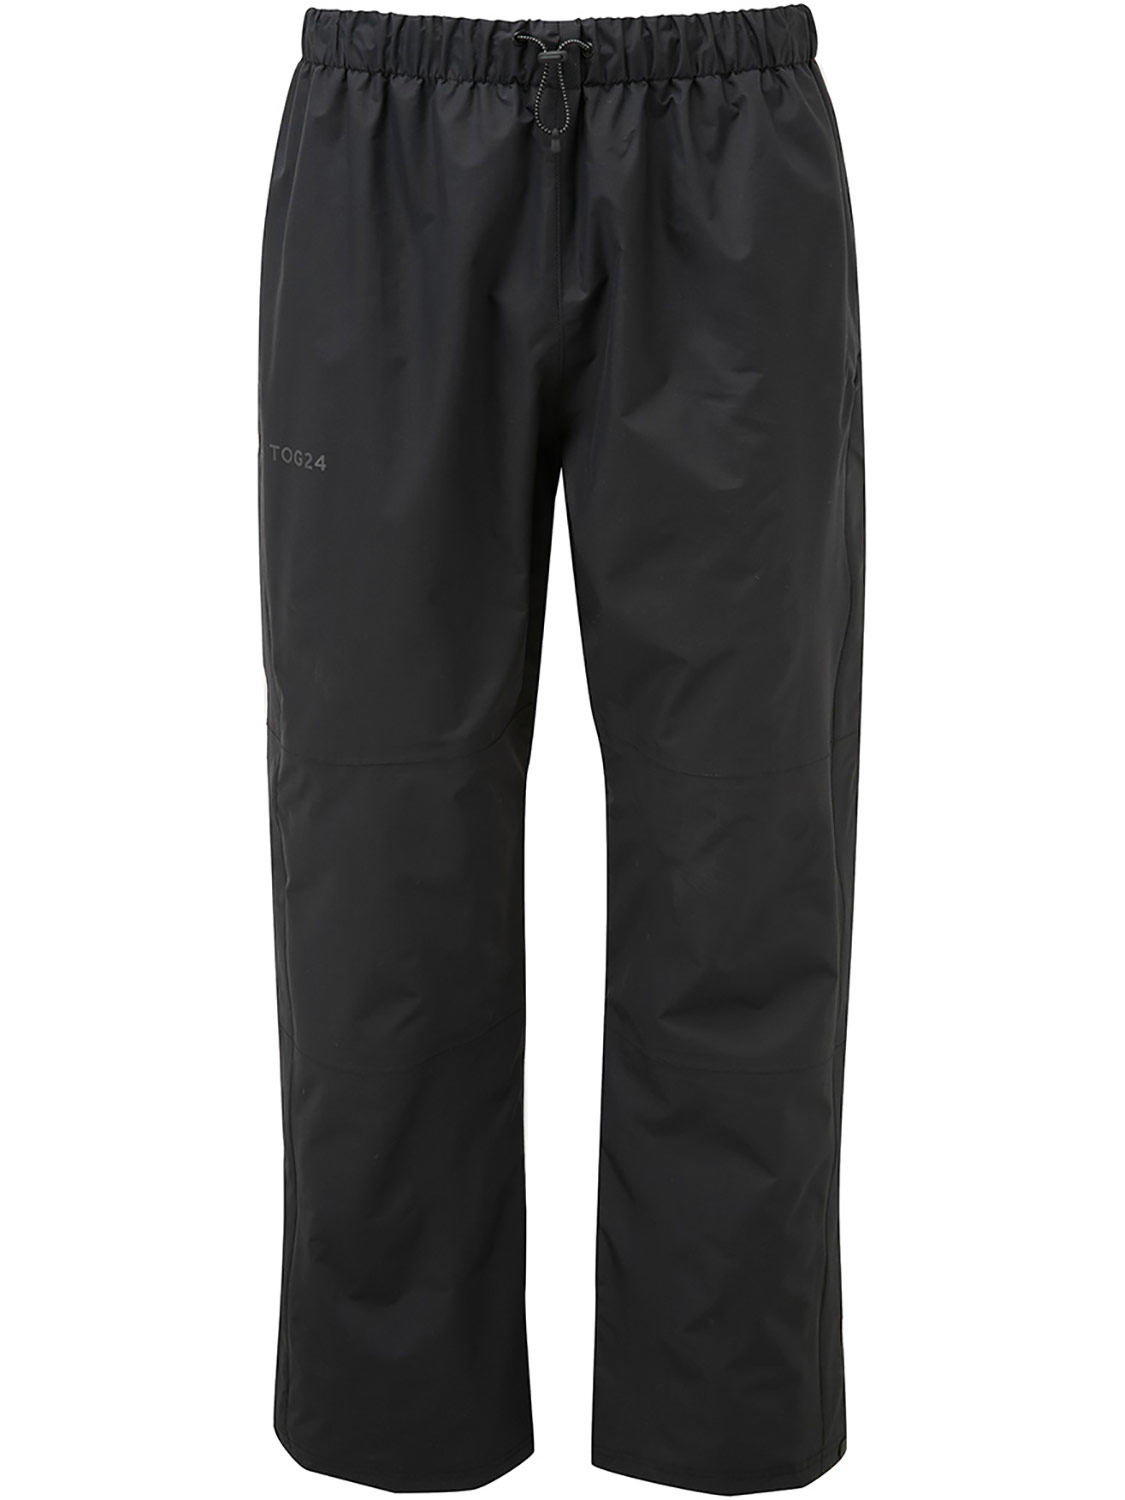 Steward Waterproof Trousers Short - Size: XS Men’s Black Tog24